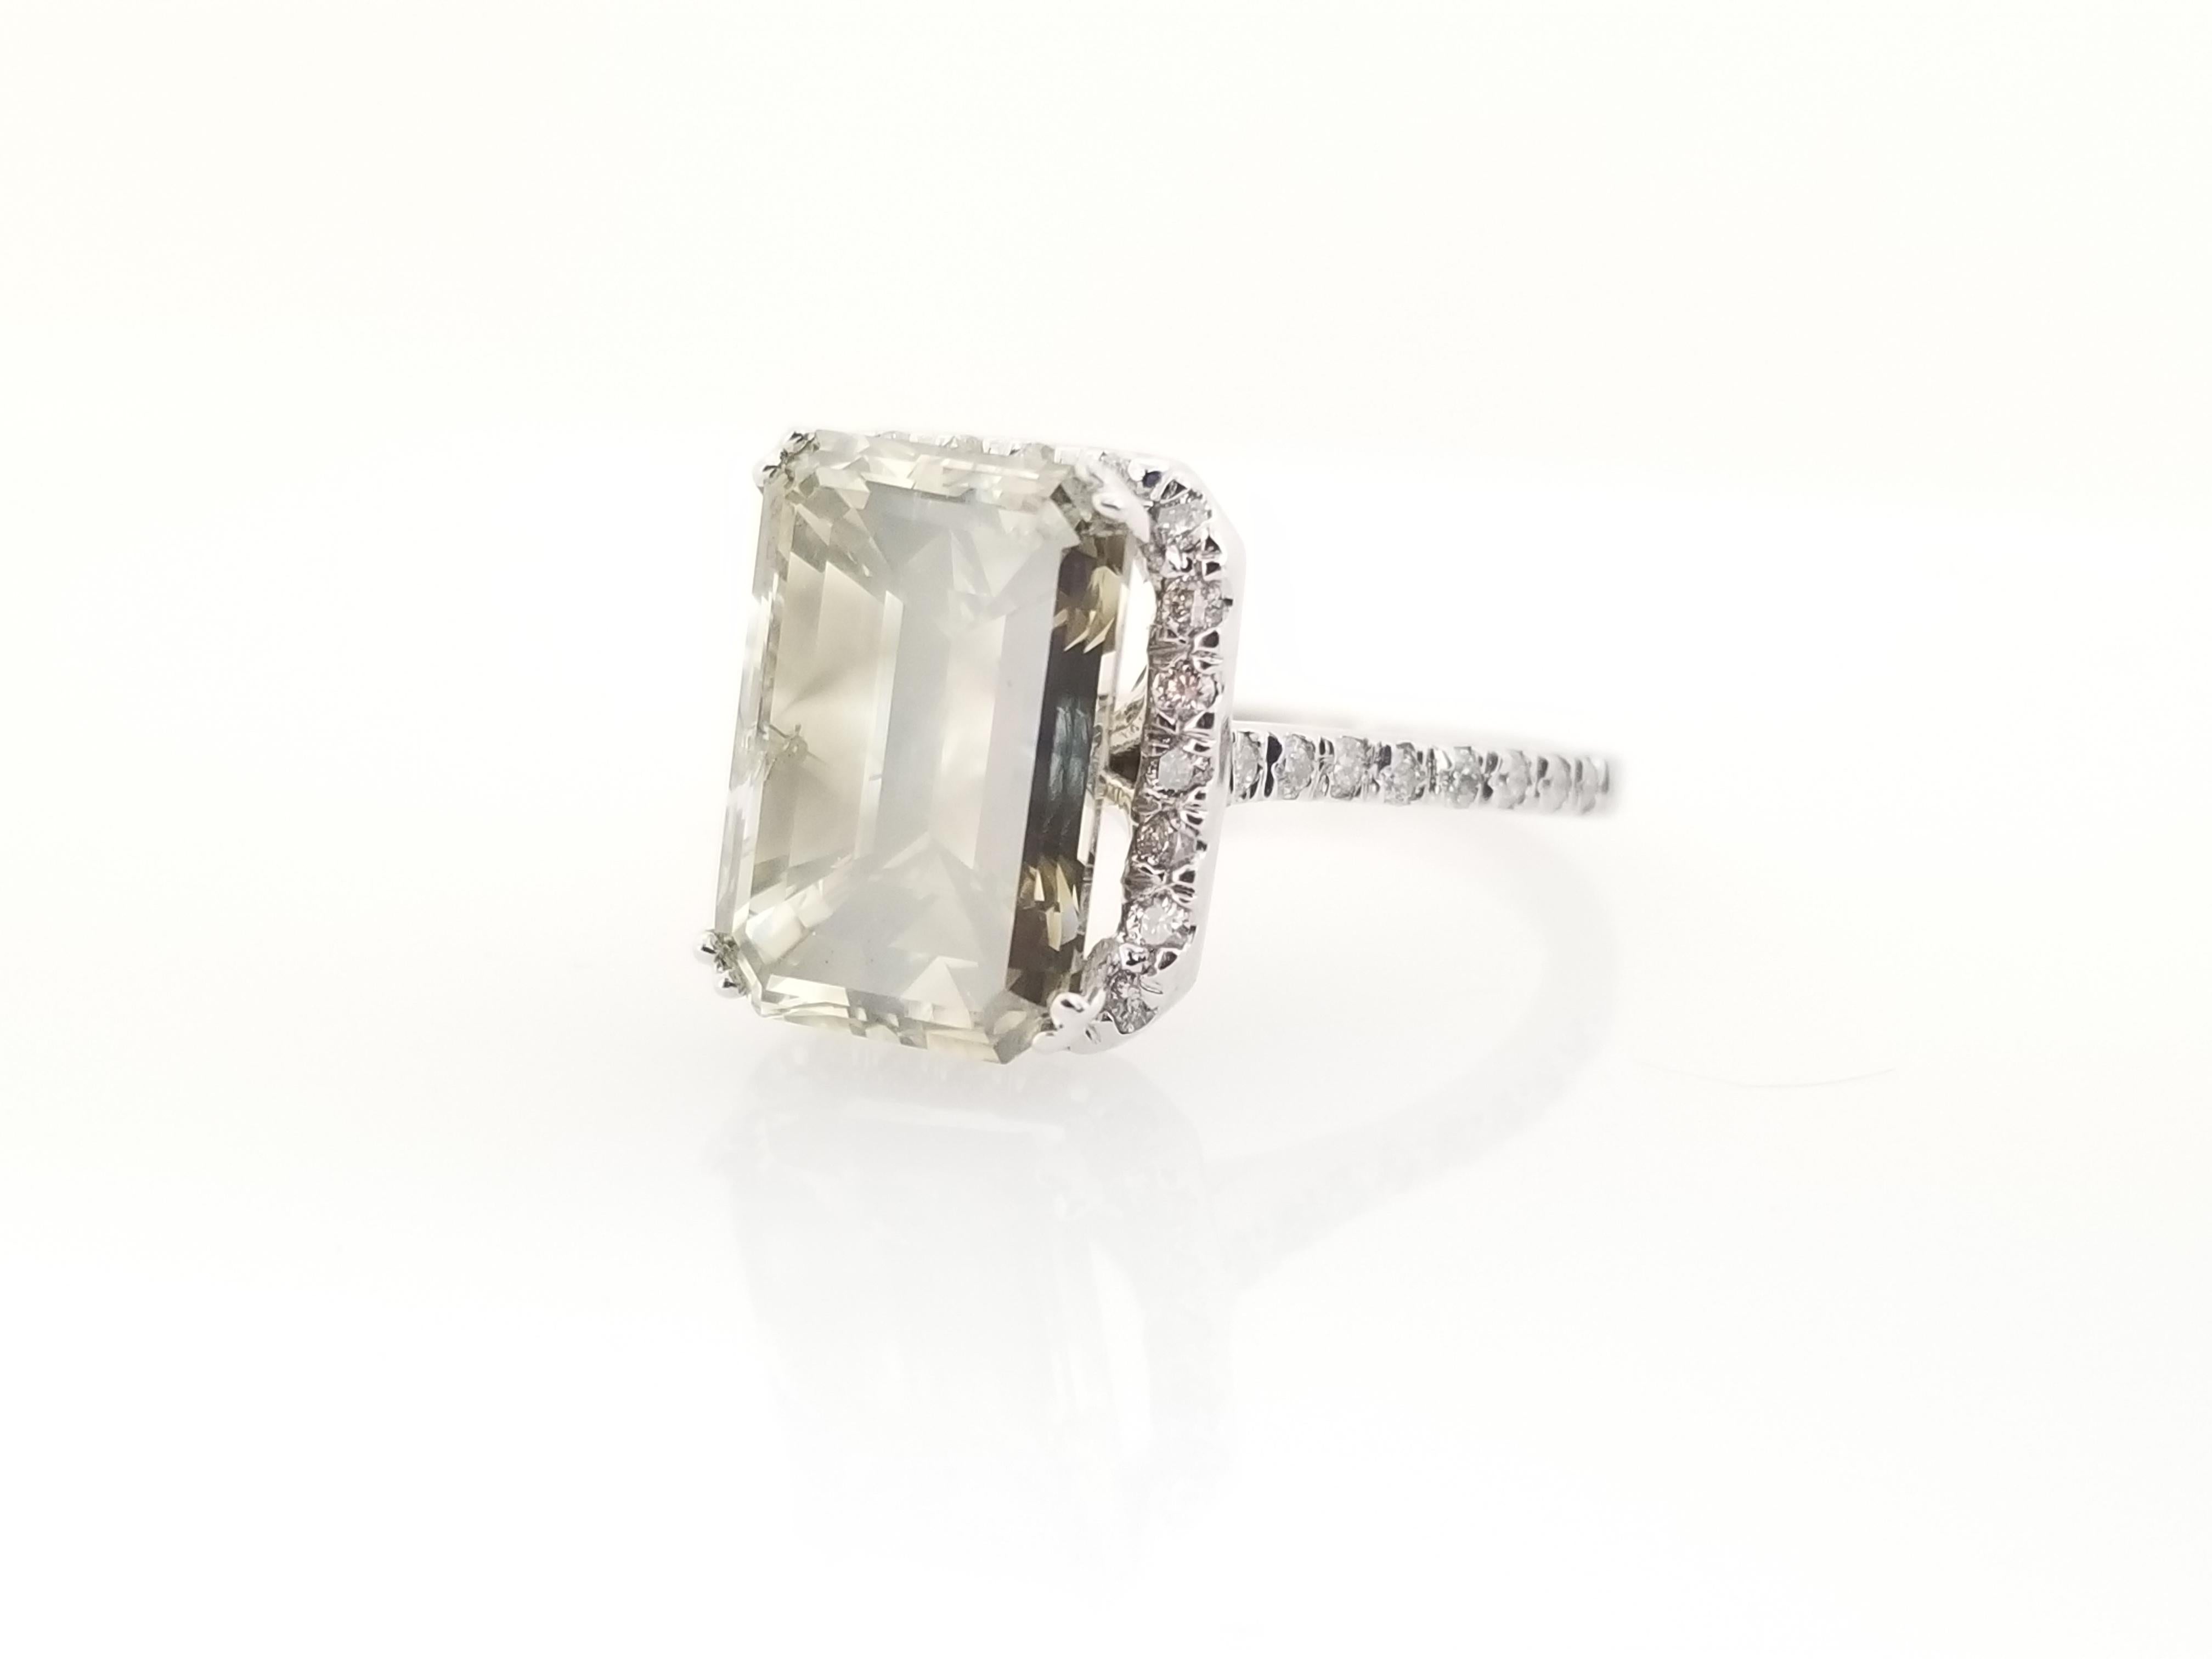 Alle natürlichen Fancy Color Gray Emerald Cut Diamond Ring mit einem Gewicht von 5,51 Karat von IGI . Eleganz für jede Gelegenheit.

IGI # GT12753503
Abmessungen: 12.12X8.23X6.29mm
Gewicht des Mittelsteins: 5,51 cttw
Seitliche Diamanten: 0.45